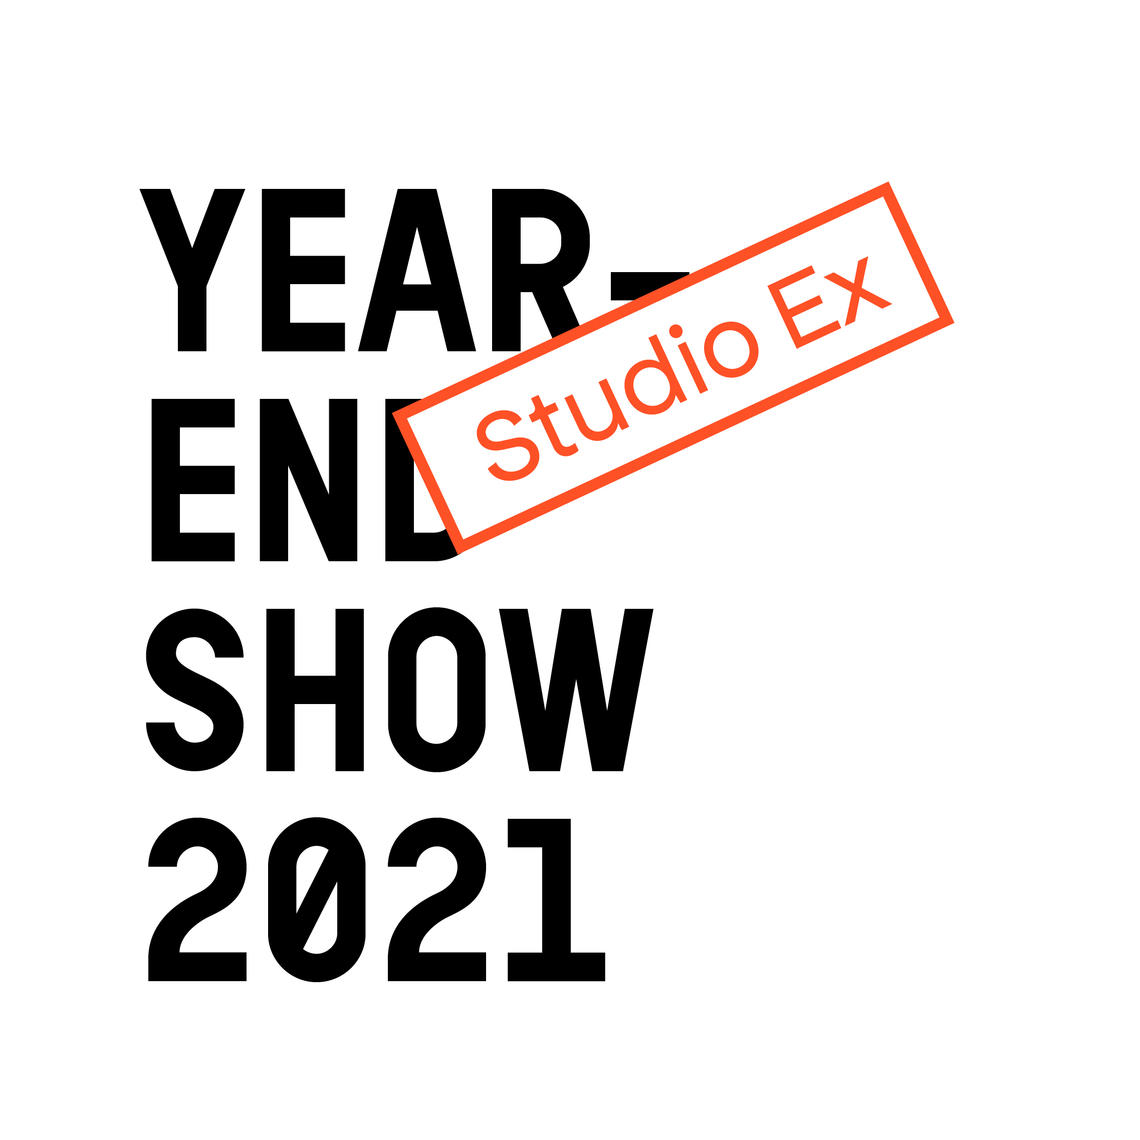 YES 2021 studio exhibition 